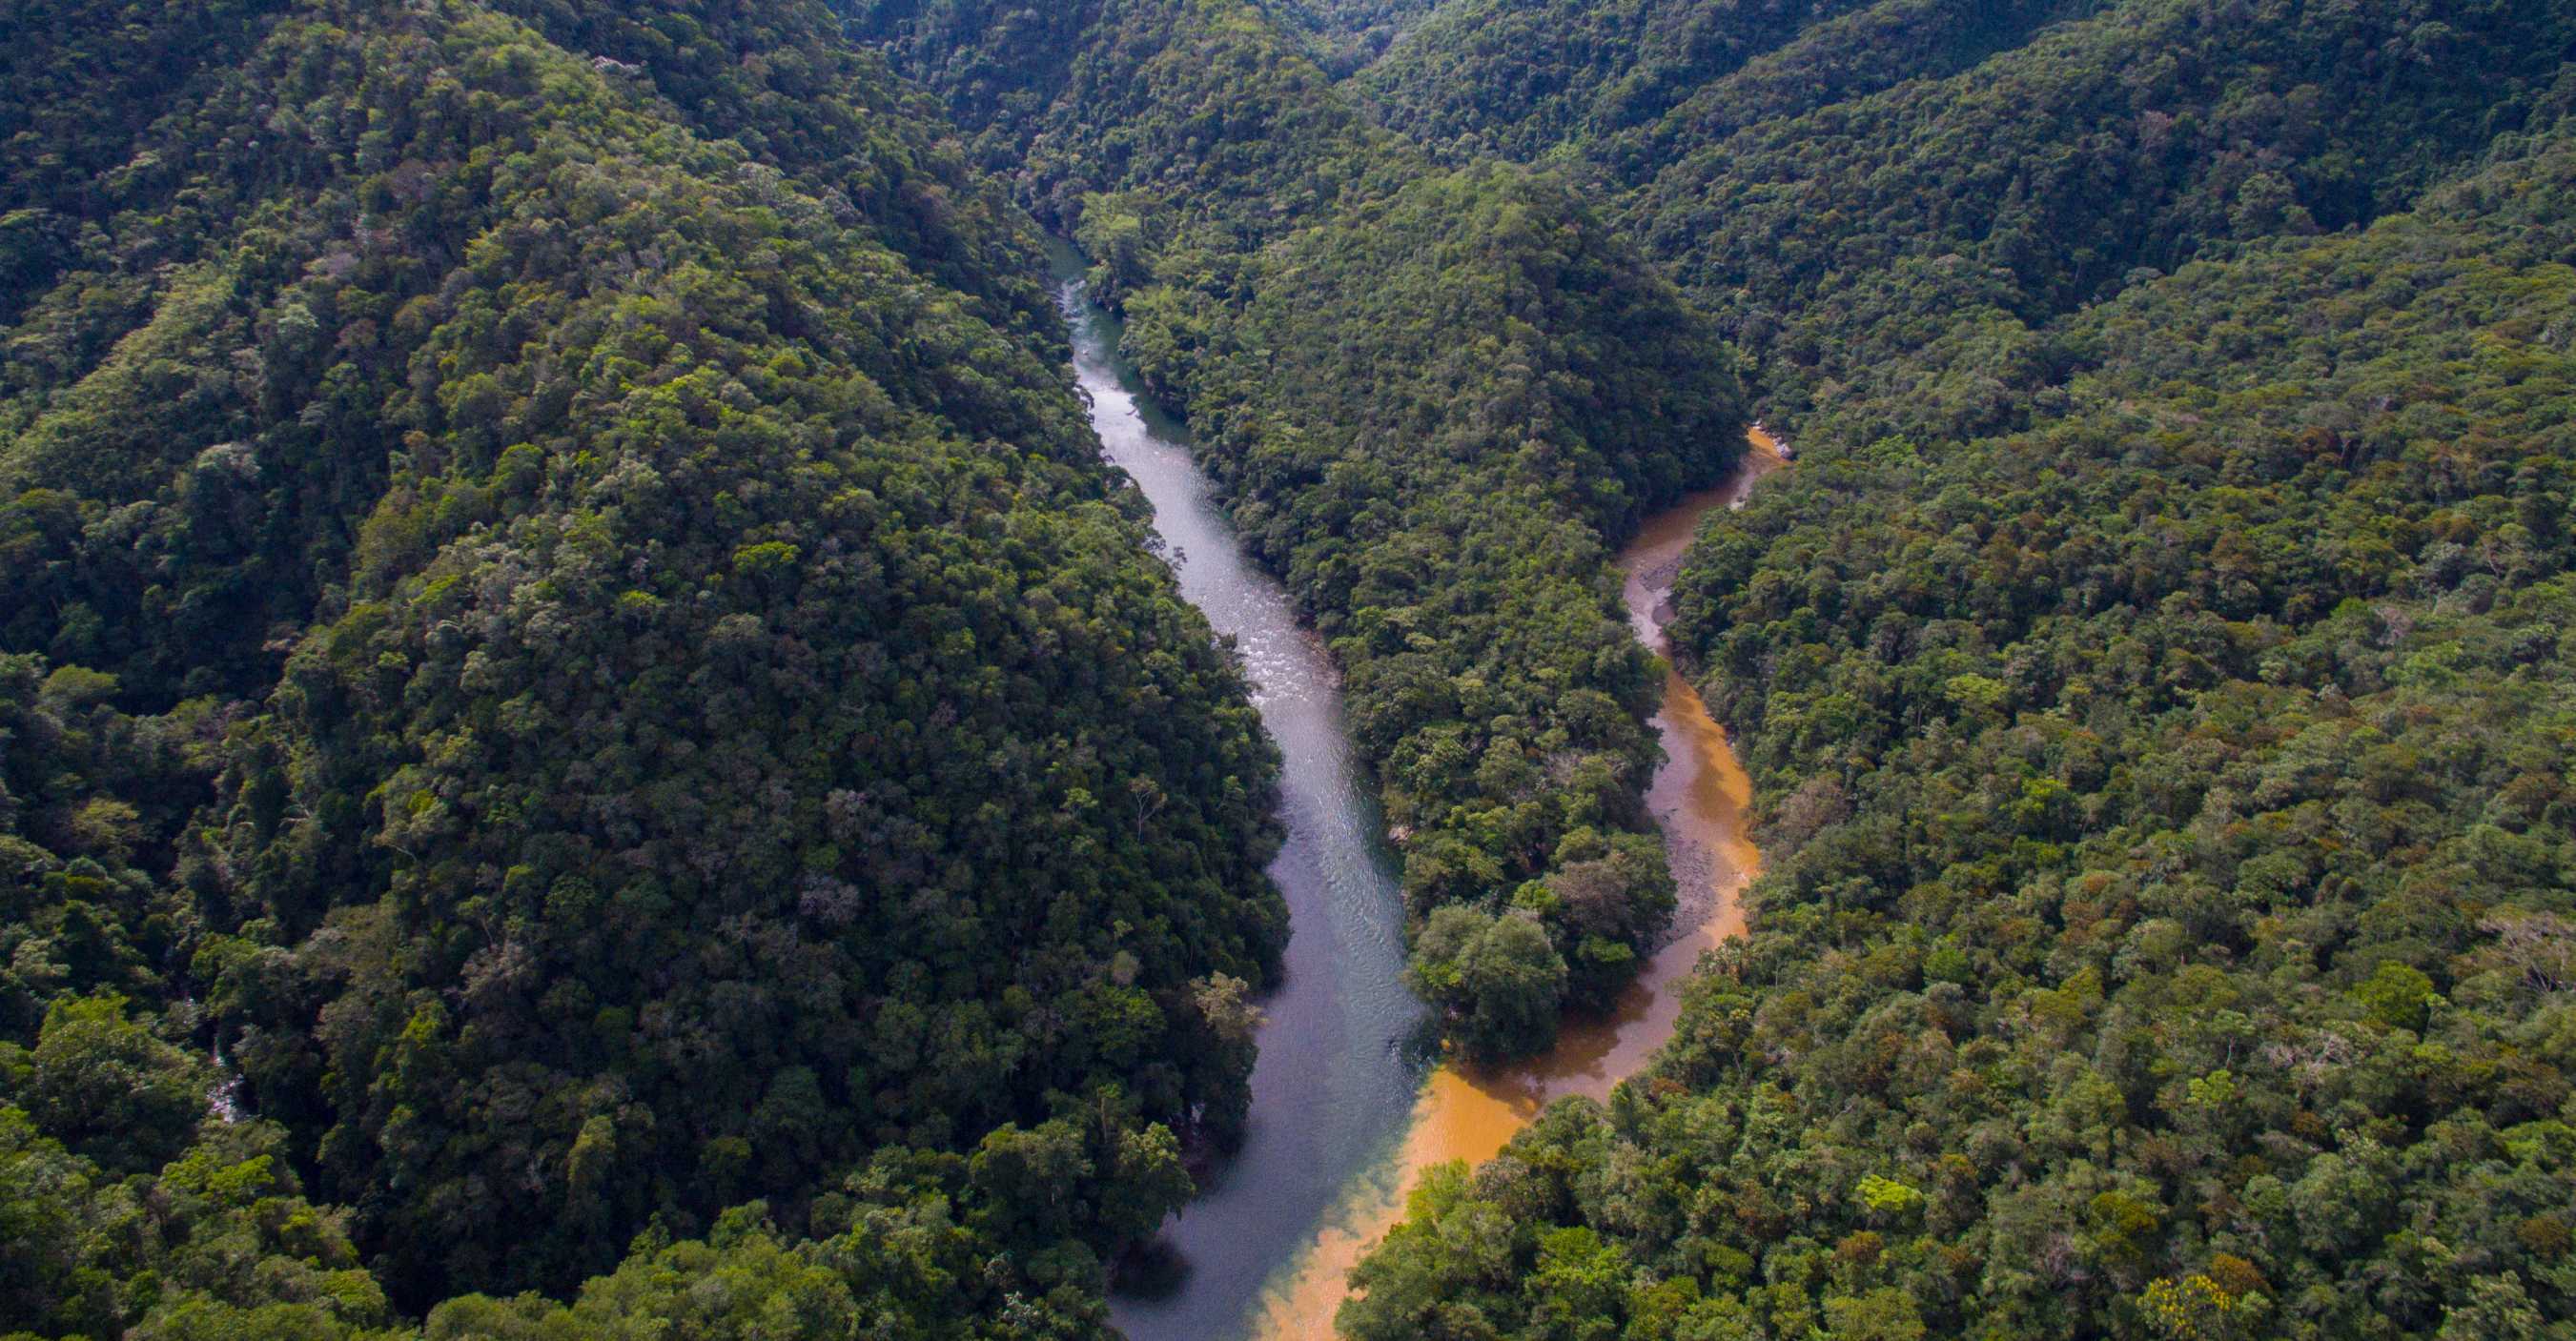 La rencontre du Río Verde et du Río Caldera.